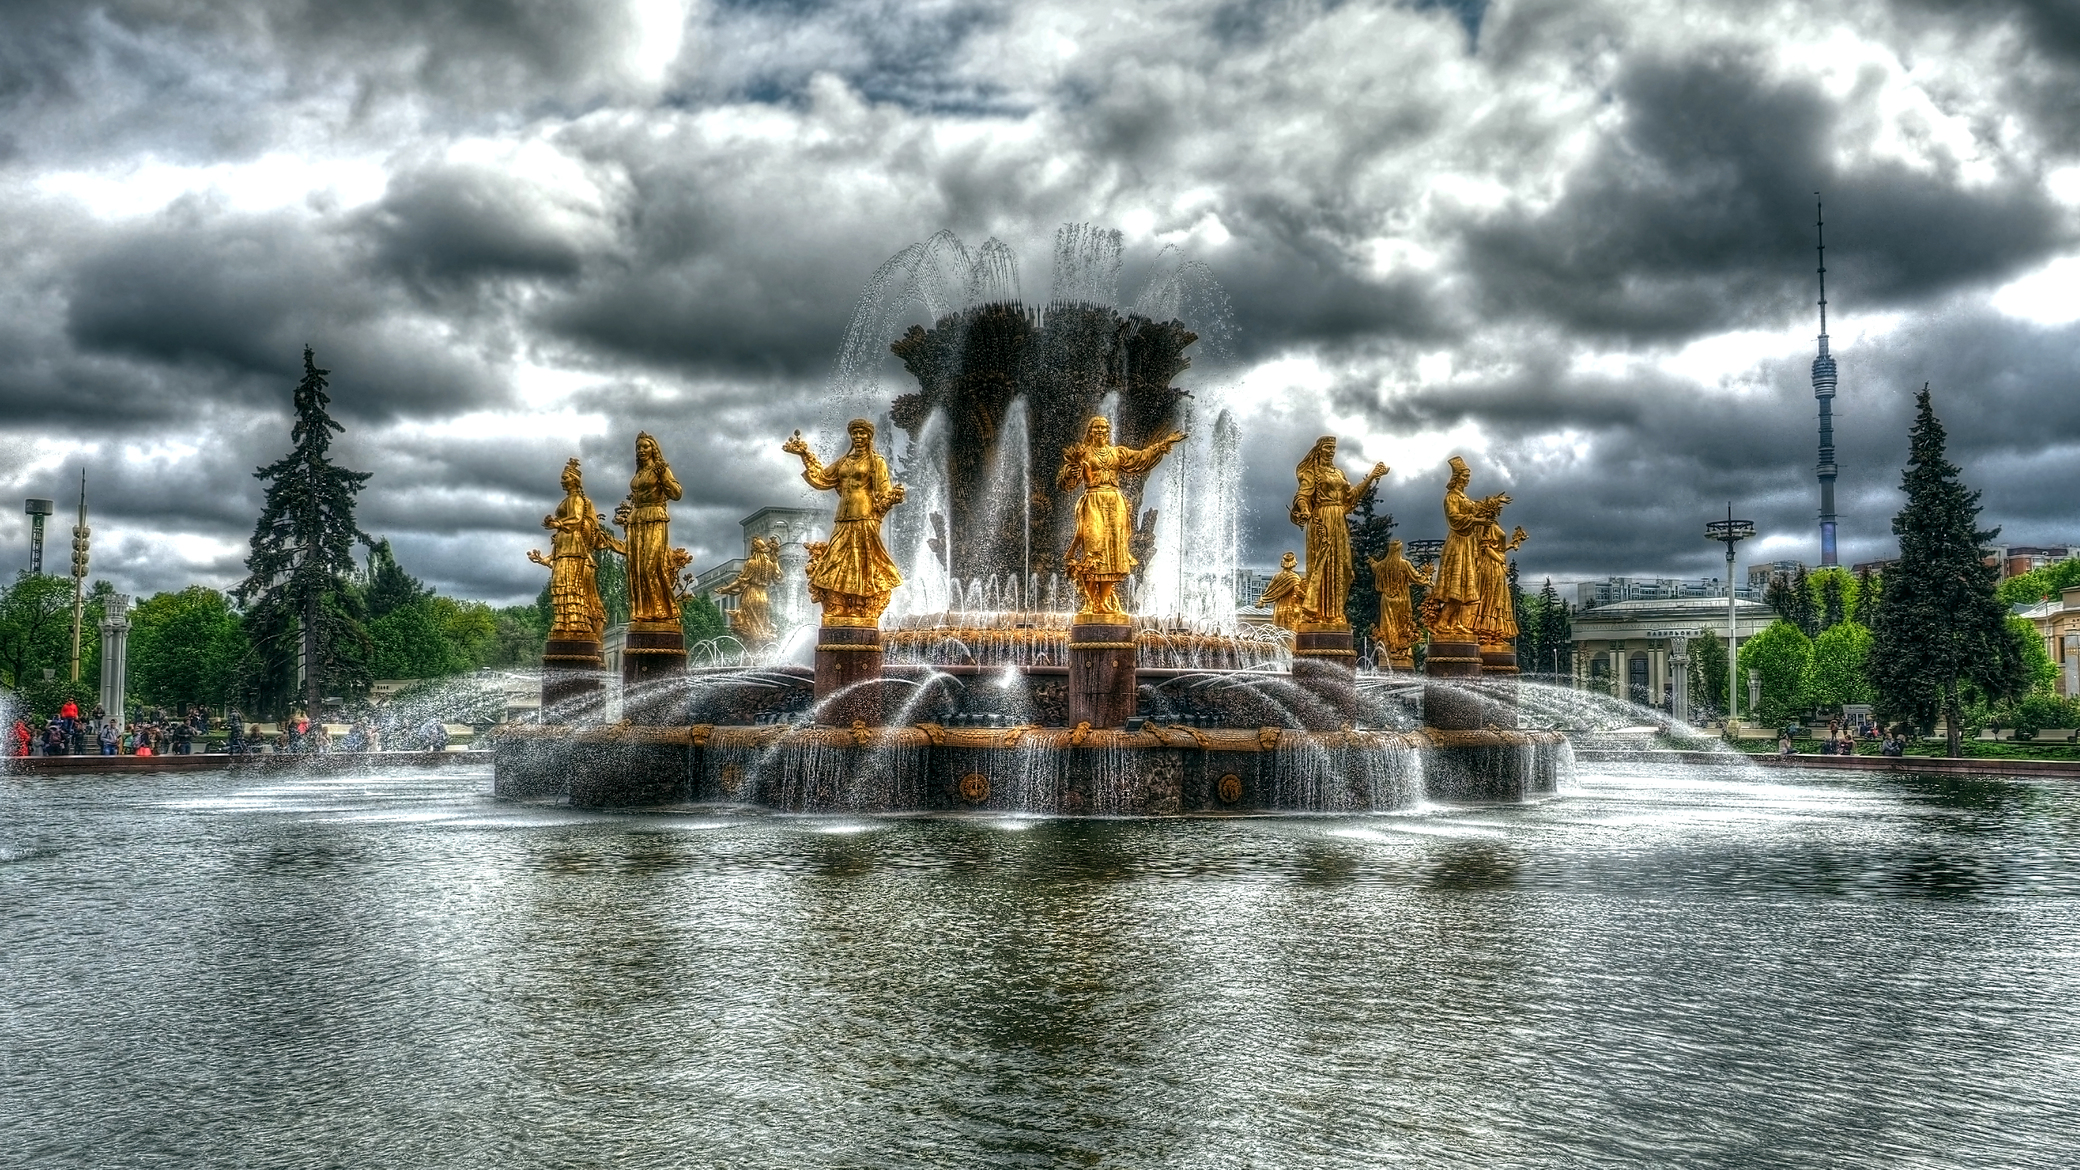 Москва, ВДНХ, фонтан дружбы народов